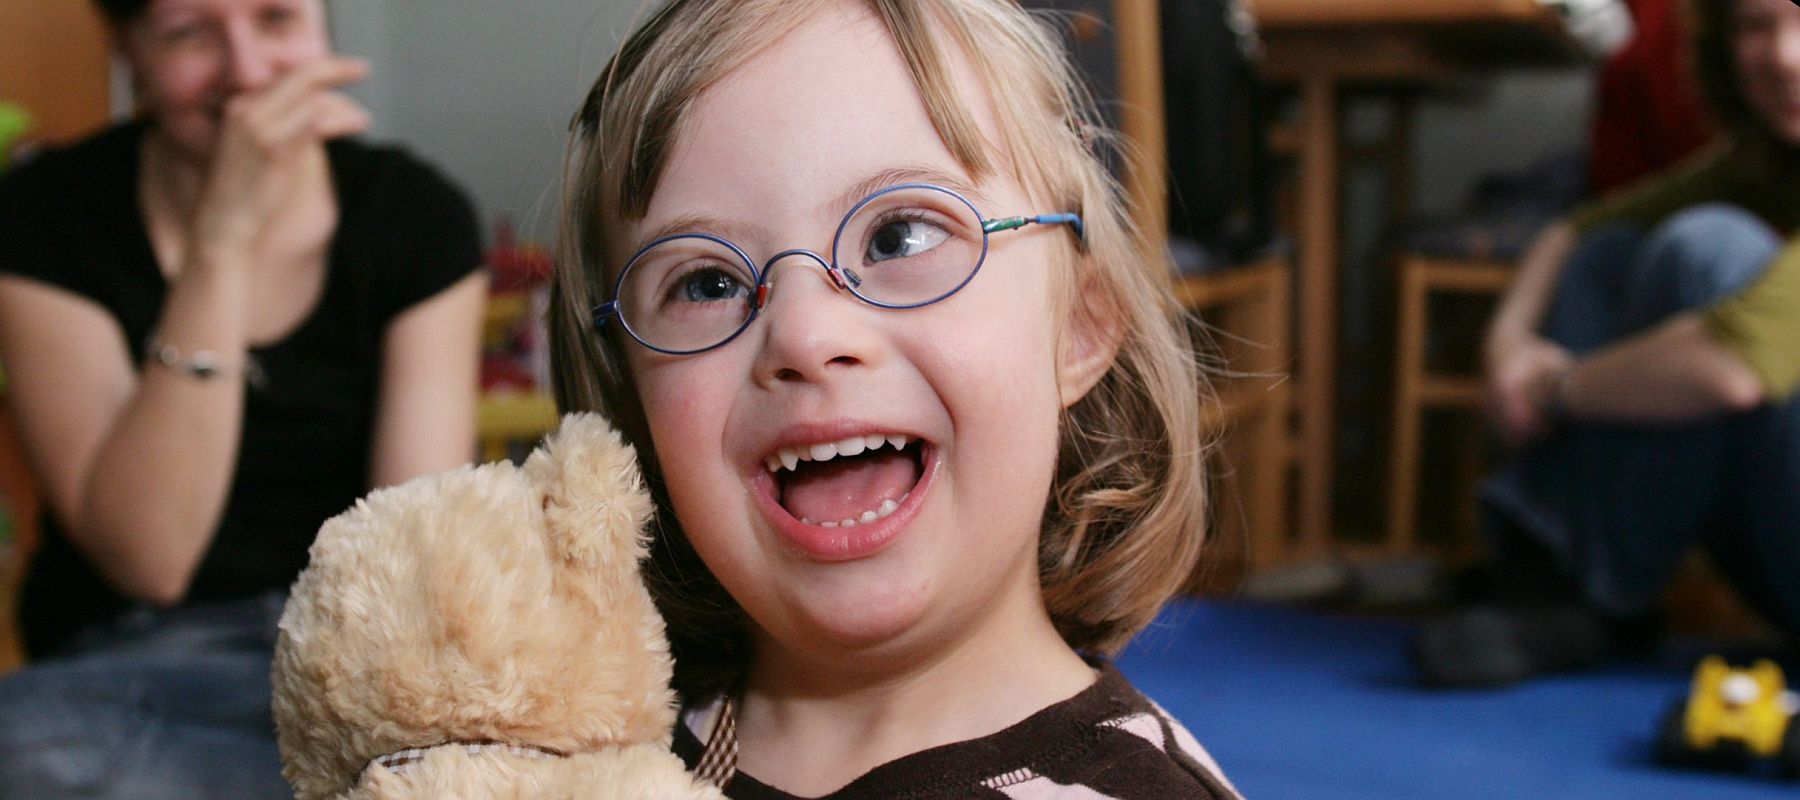 Ein kleines Mädchen sitzt im Kinderzimmer, hält einen Teddybär und lacht. Im Hintergrund sieht man eine Frau.